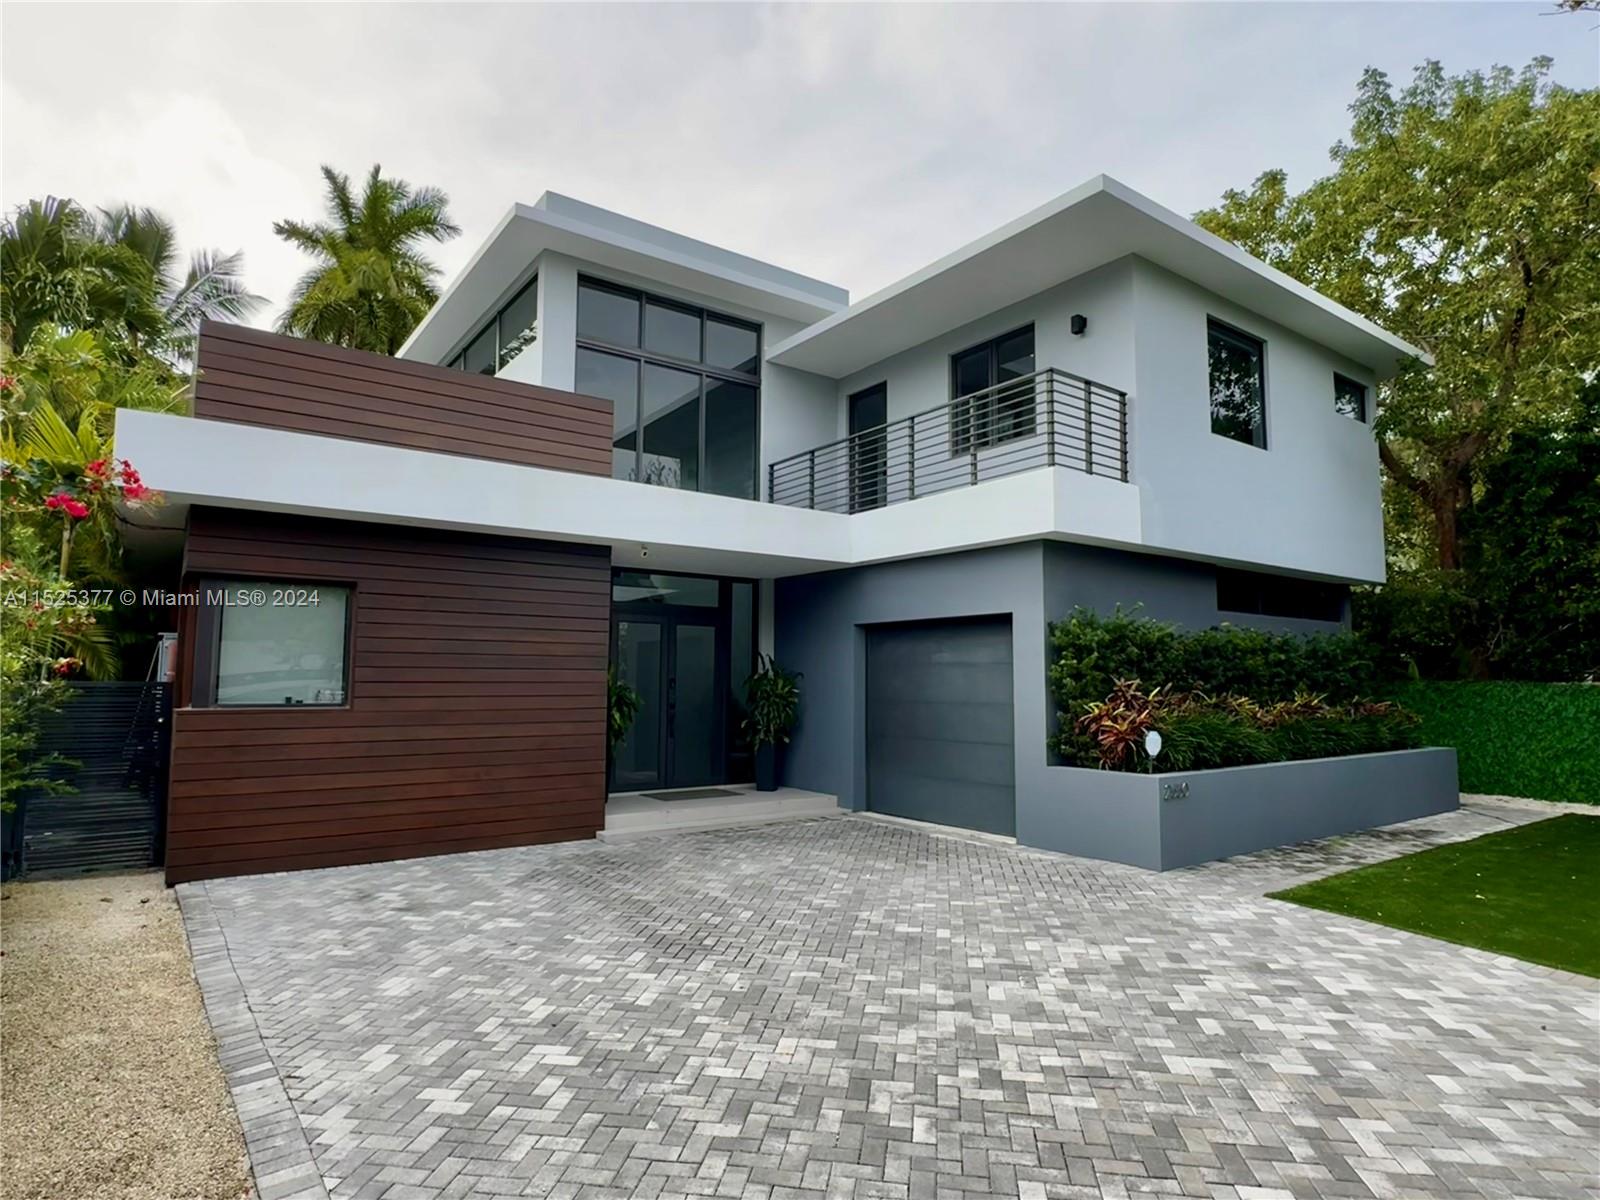 View Miami, FL 33133 house